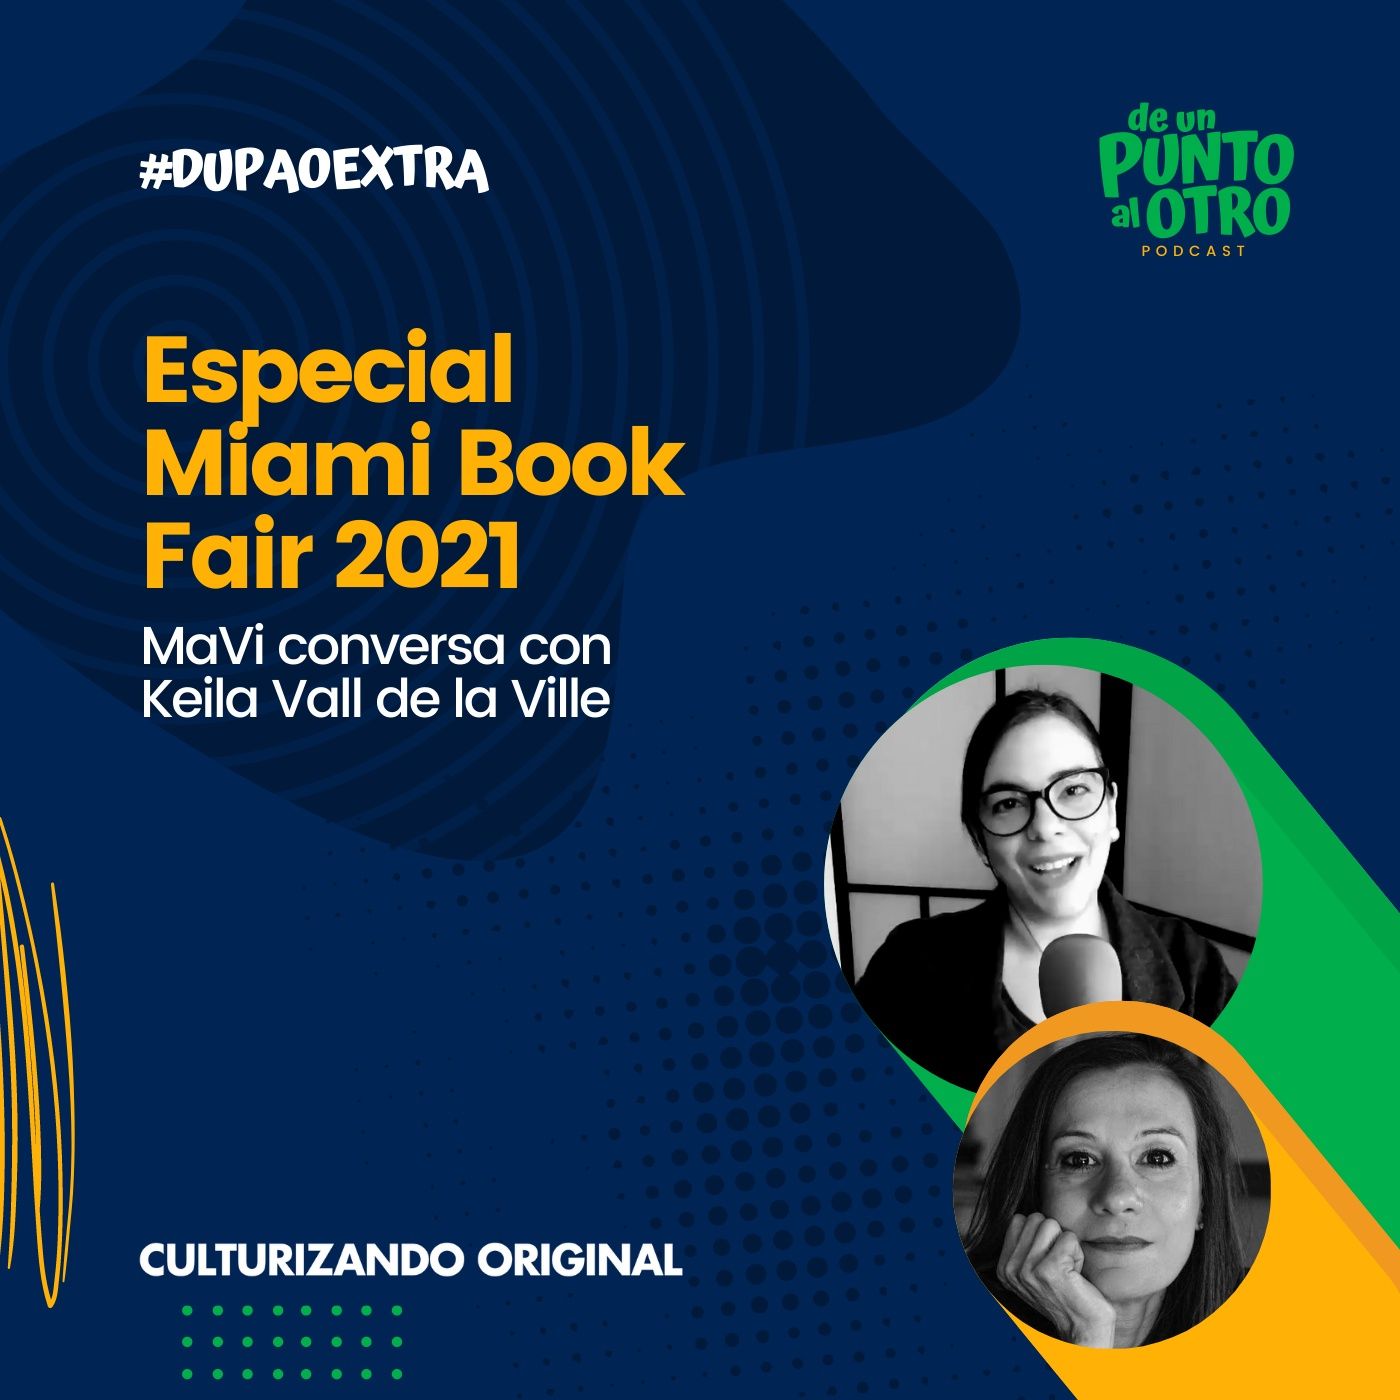 Extra 11 • Especial Miami Book Fair, con Keila Vall de la Ville • De un punto al otro • DUPAO.NEWS